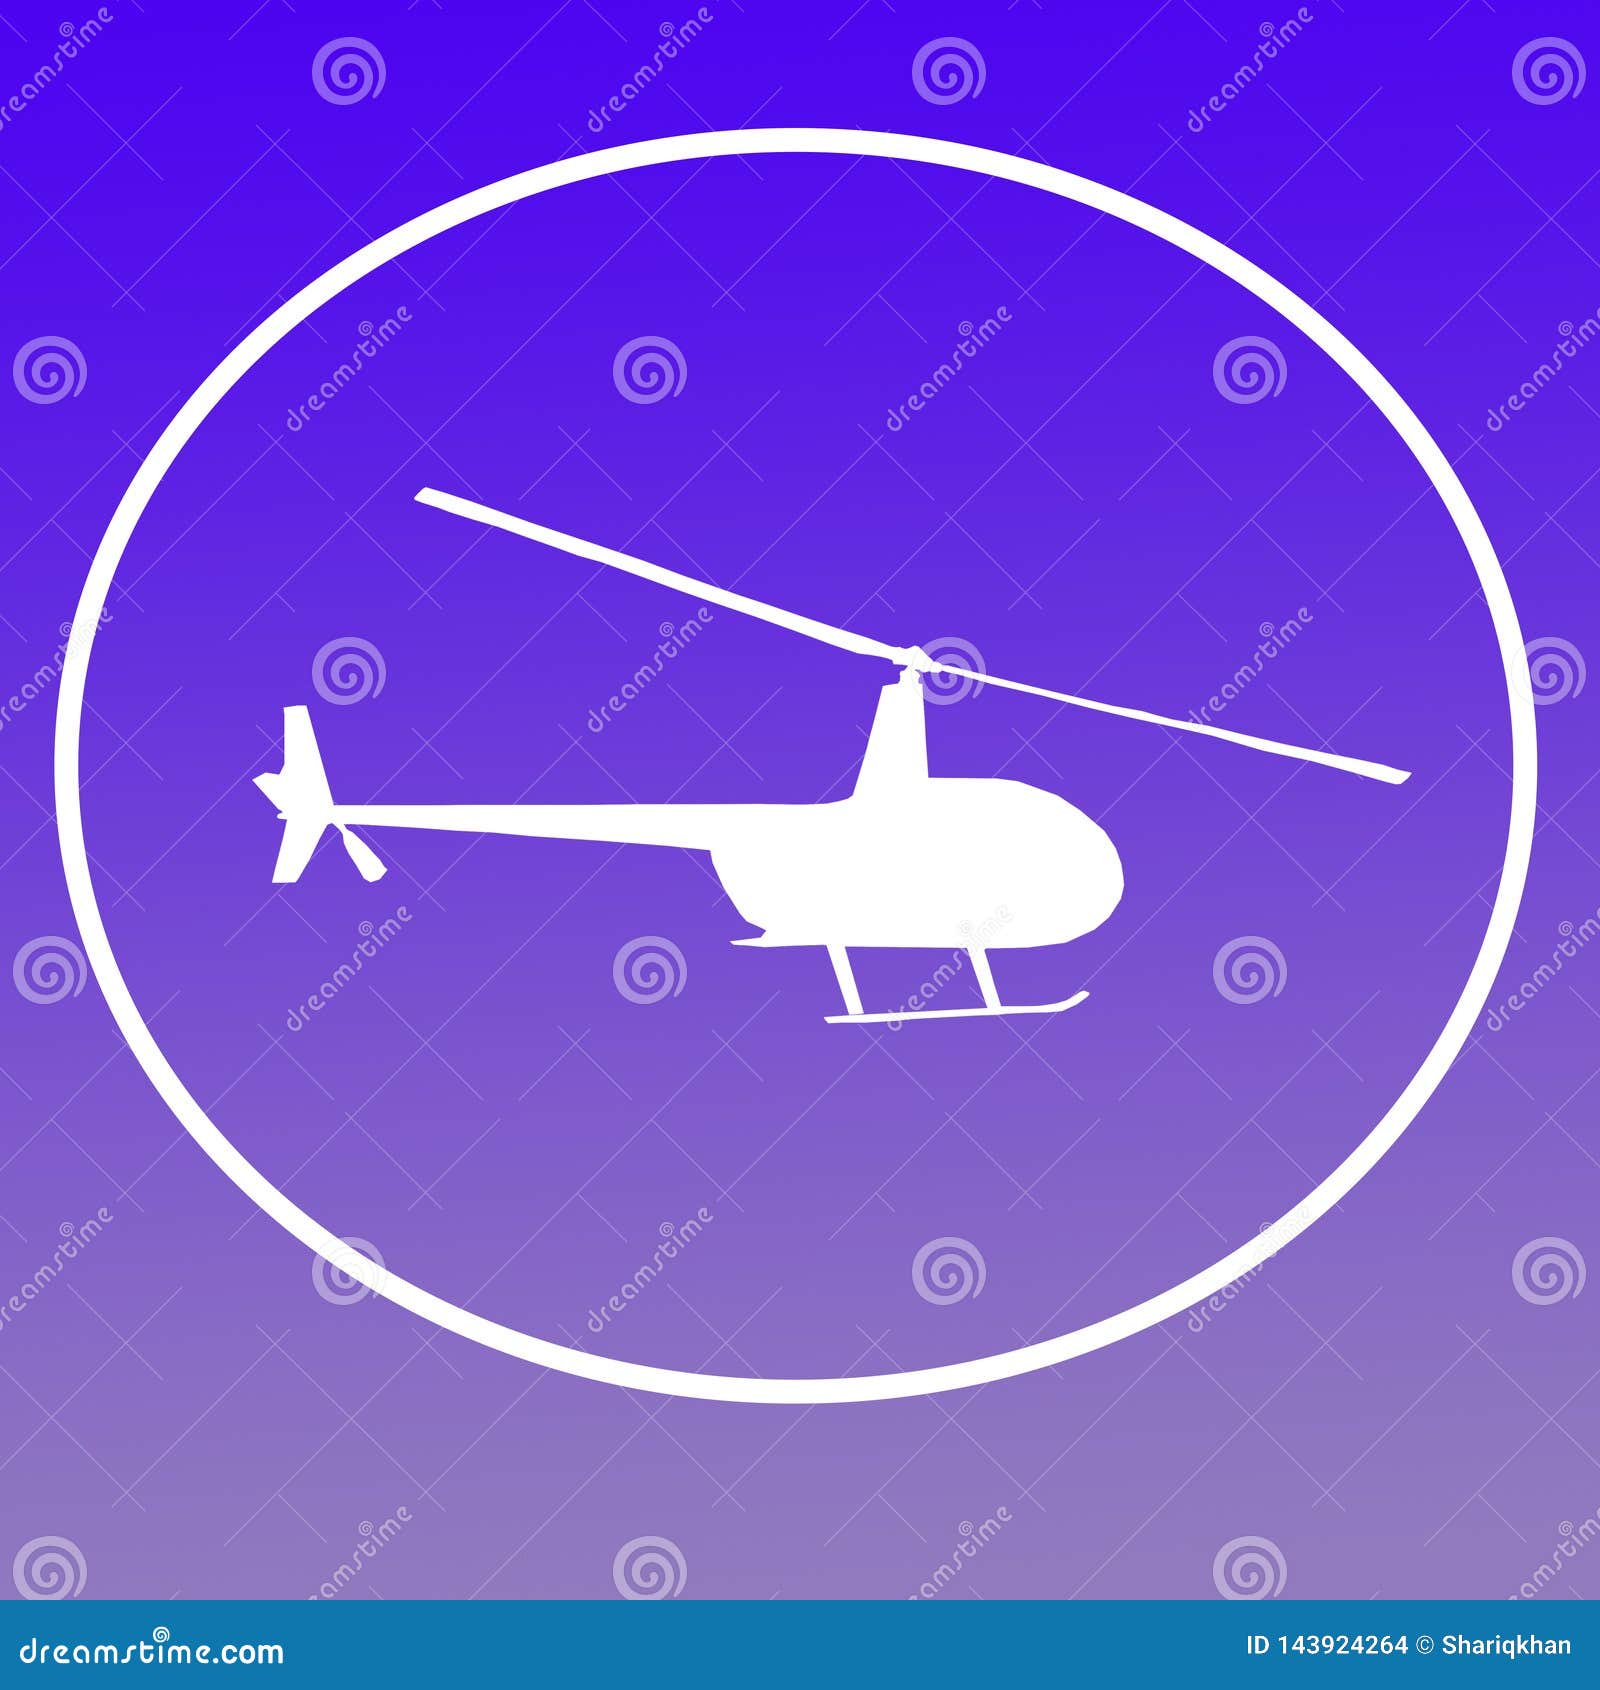 Chopper Helicopter Logo Banner Background-Beeld op Blauwe Purpere Gradi?nt voor Websites, Presentaties, Banners, Affiches, Vliegers had op de luchtvaartindustrie betrekking, aerosporten, aero modellering, techniek, navigatie, redding, vervoer